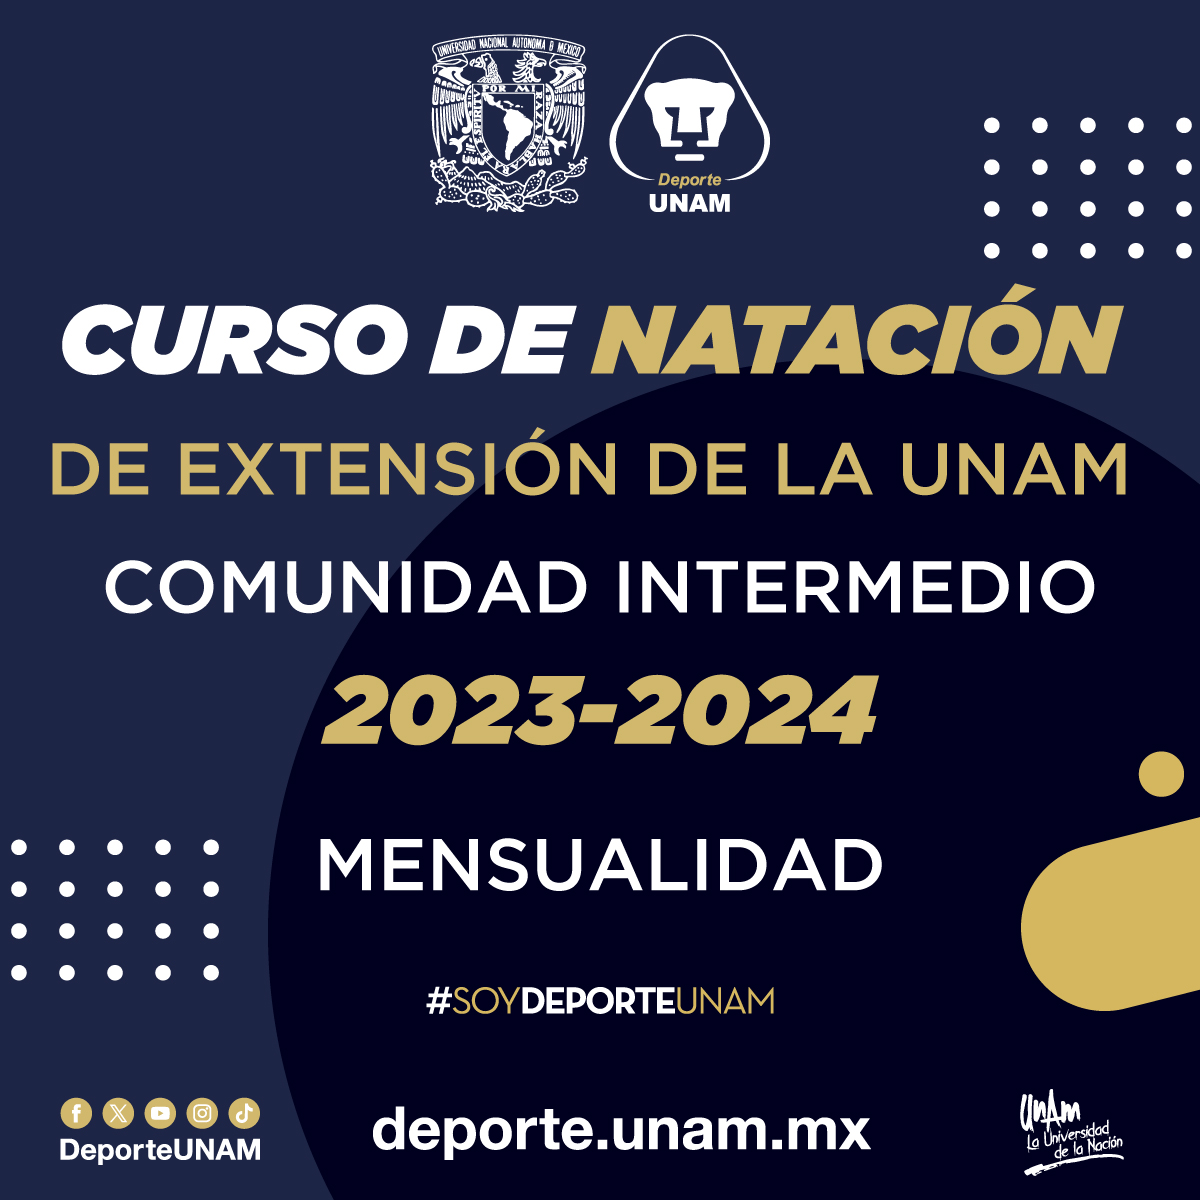 CURSO DE NATACIÓN DE EXTENSIÓN DE LA UNAM 2023 - 2024 COMUNIDAD INTERMEDIO MENSUALIDAD